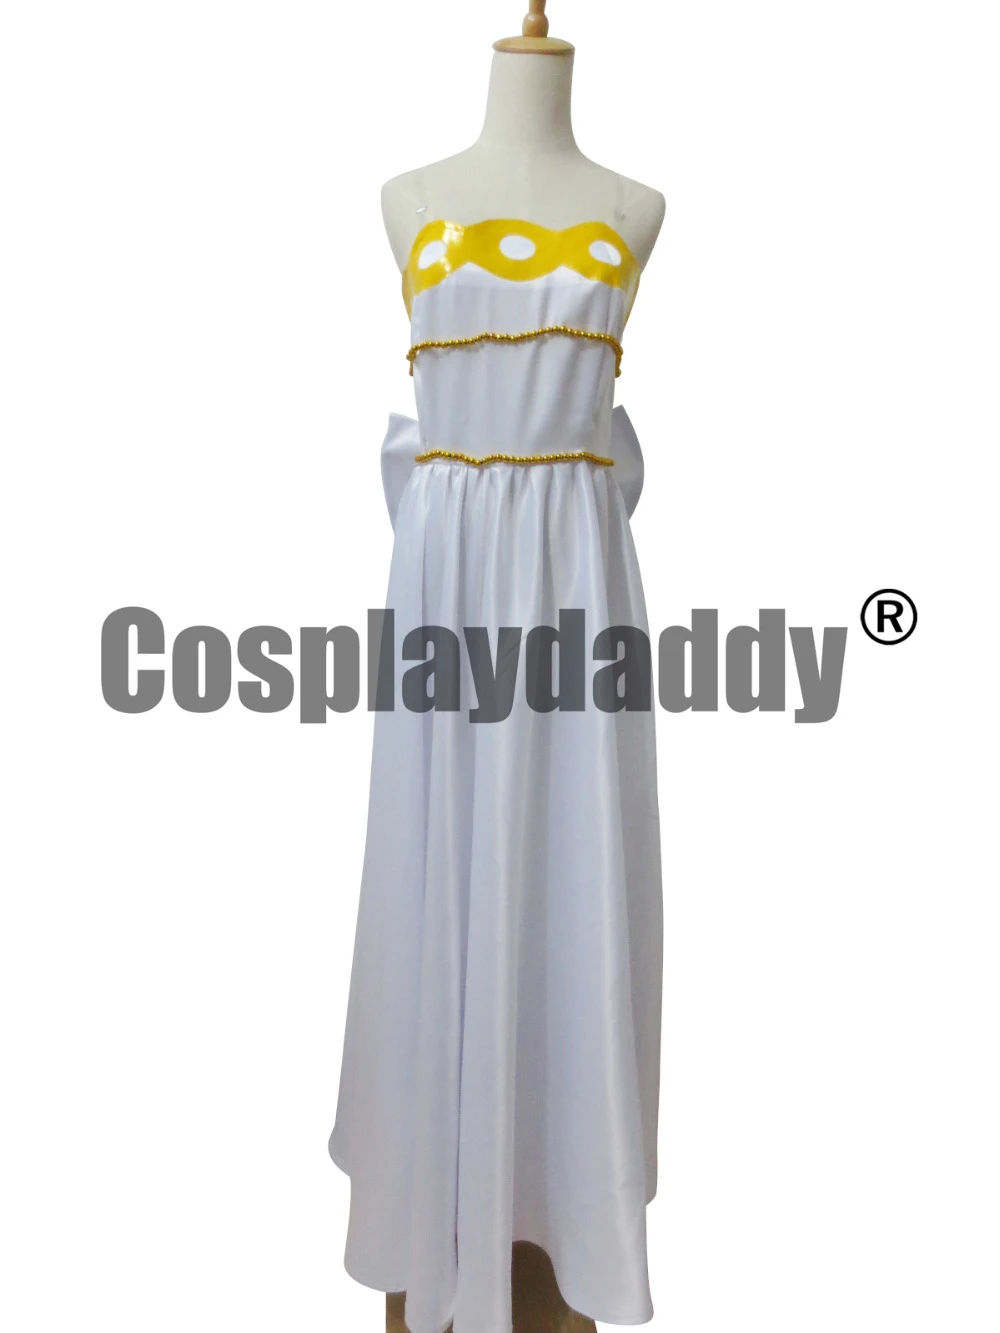 Cosplay sailor moon princesa serenity vestido branco dress costume|sailor  moon cosplay|princess serenitycosplay princess - AliExpress